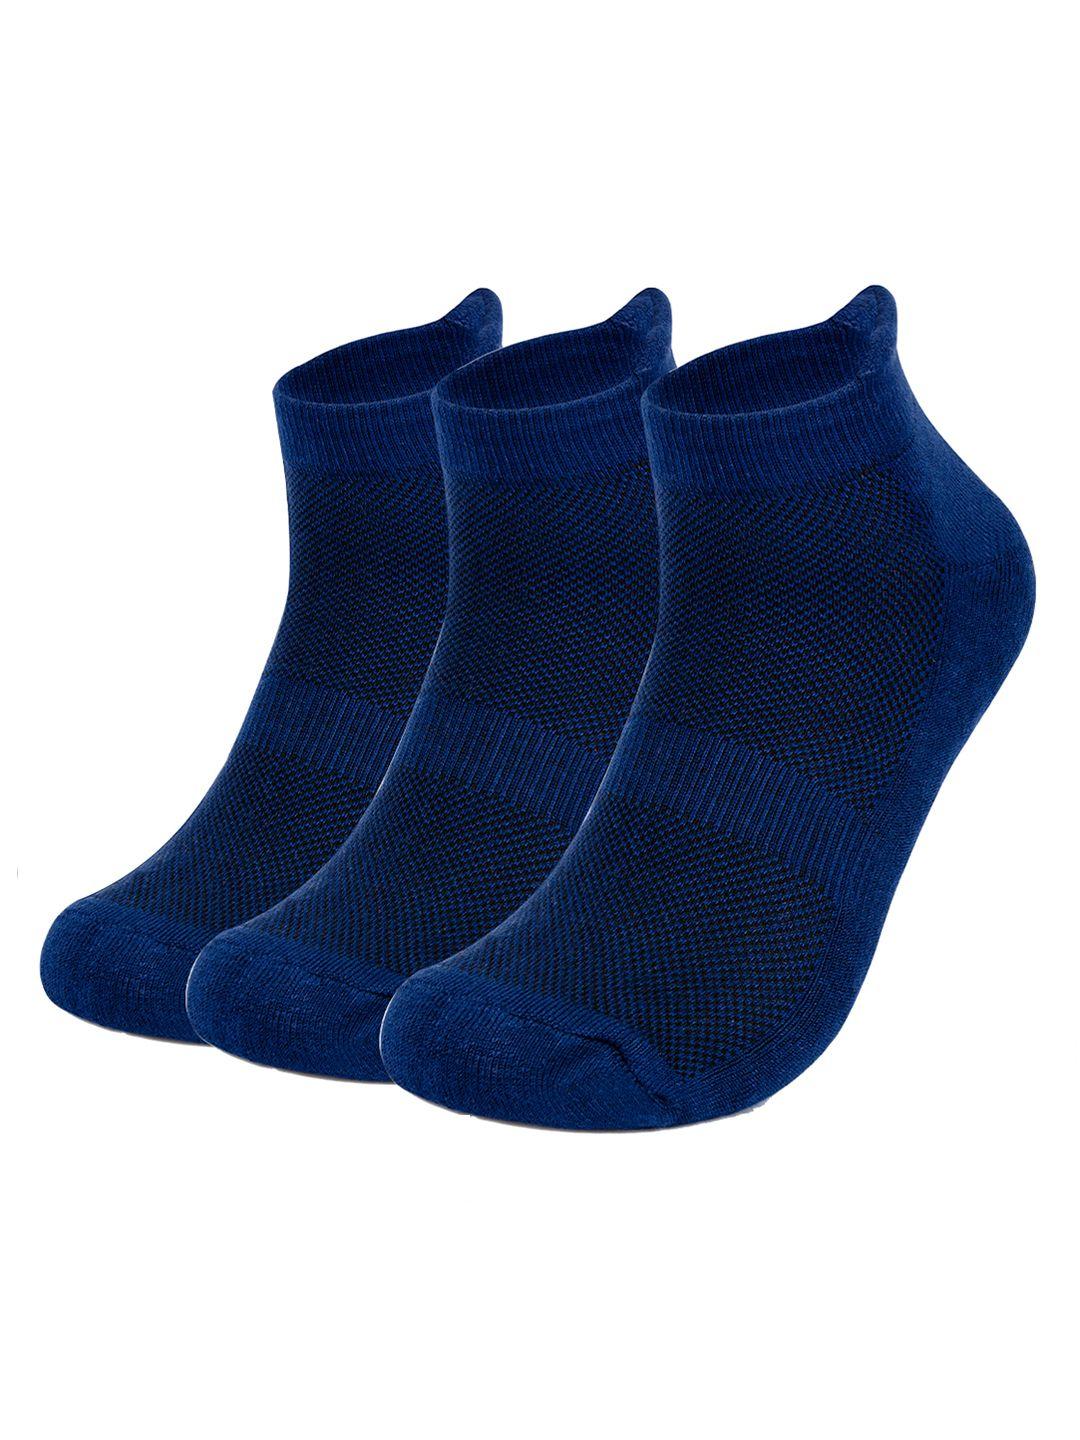 mush-bamboo-pack-of-3-ankle-length-socks